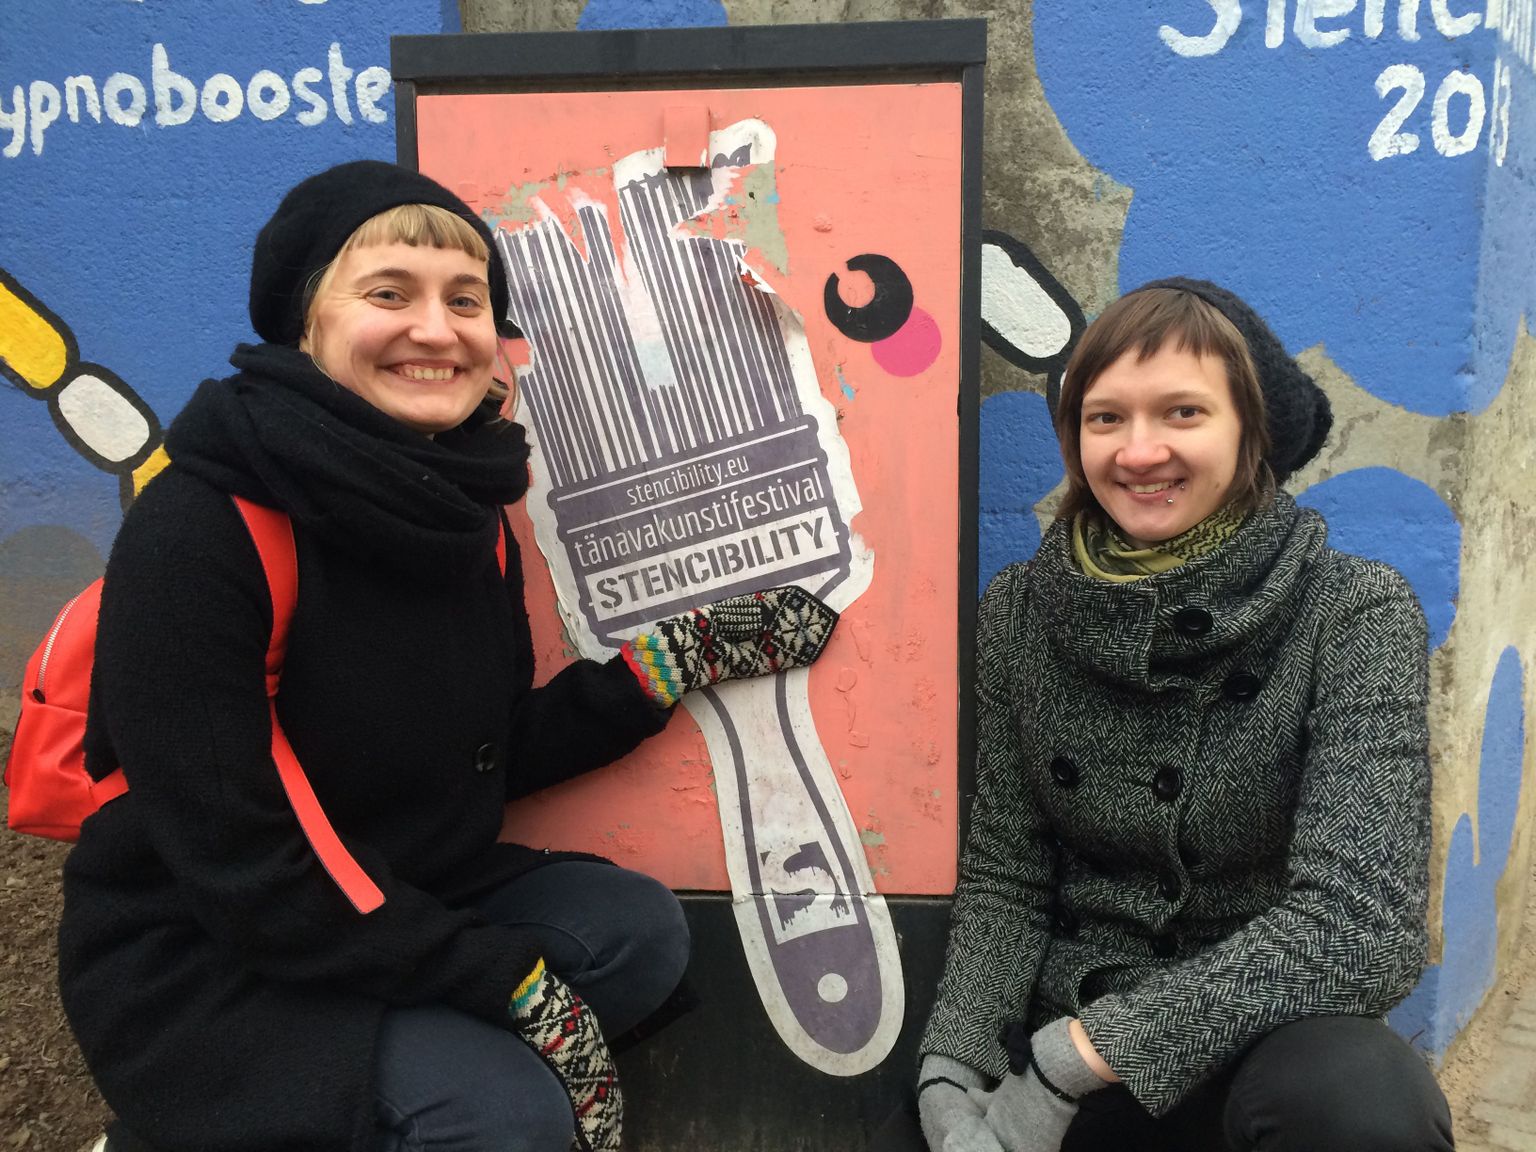 Tänavakunstifestivali Stencibility korraldajad: Kadri Lind ja Sirla. 
Festivali raames toimuvad ka Tartu tänavakunsti tutvustavad giidiga tuurid.